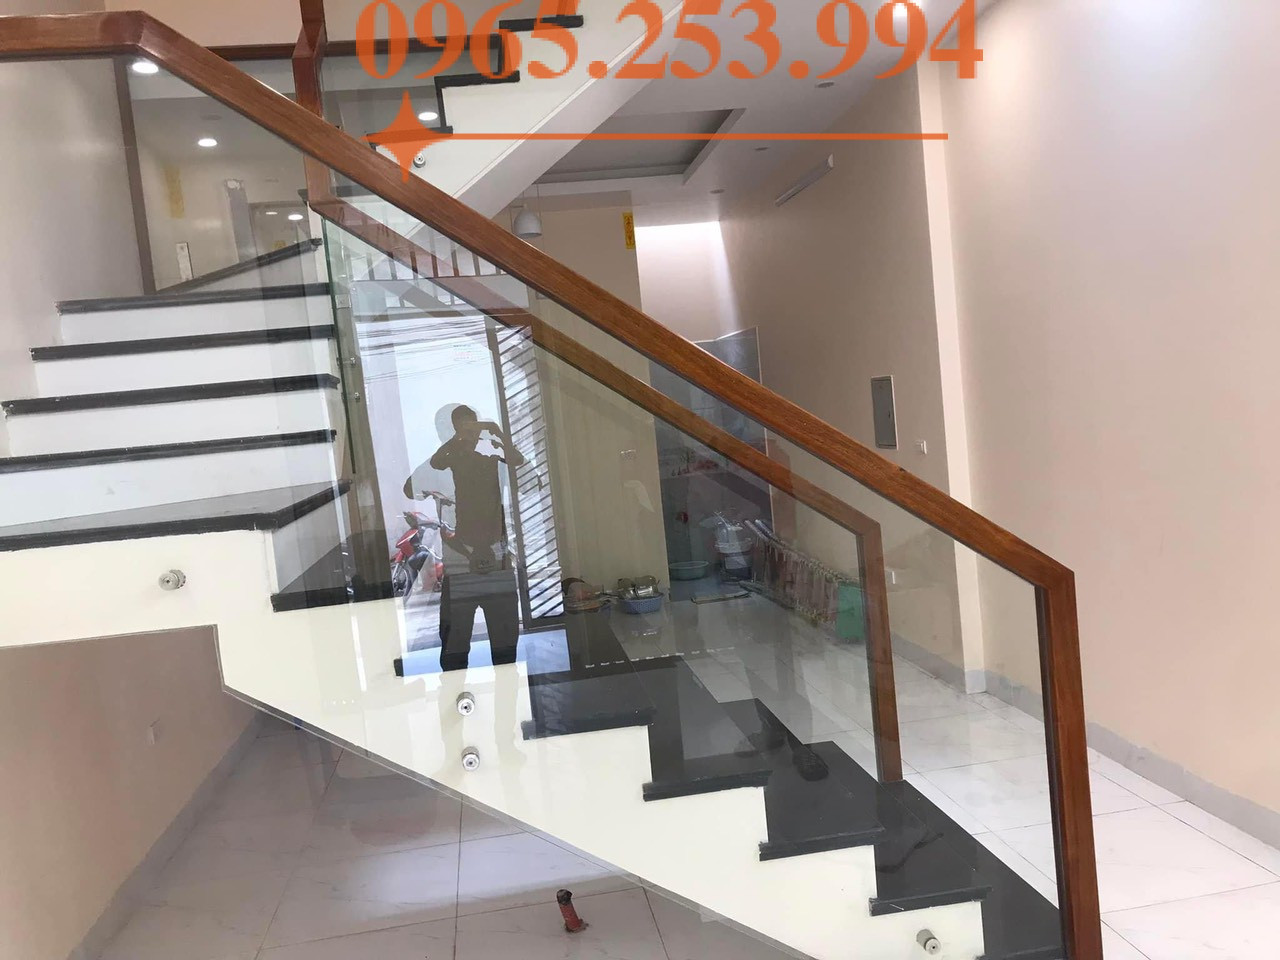 Vì sao nên chọn Cầu thang đẹp Hà Nội? Bạn đang tìm Địa chỉ thiết kế cầu thang kính cường lực đẹp tại Quận Hoàng Mai Gọi Ngay 0965.253.994